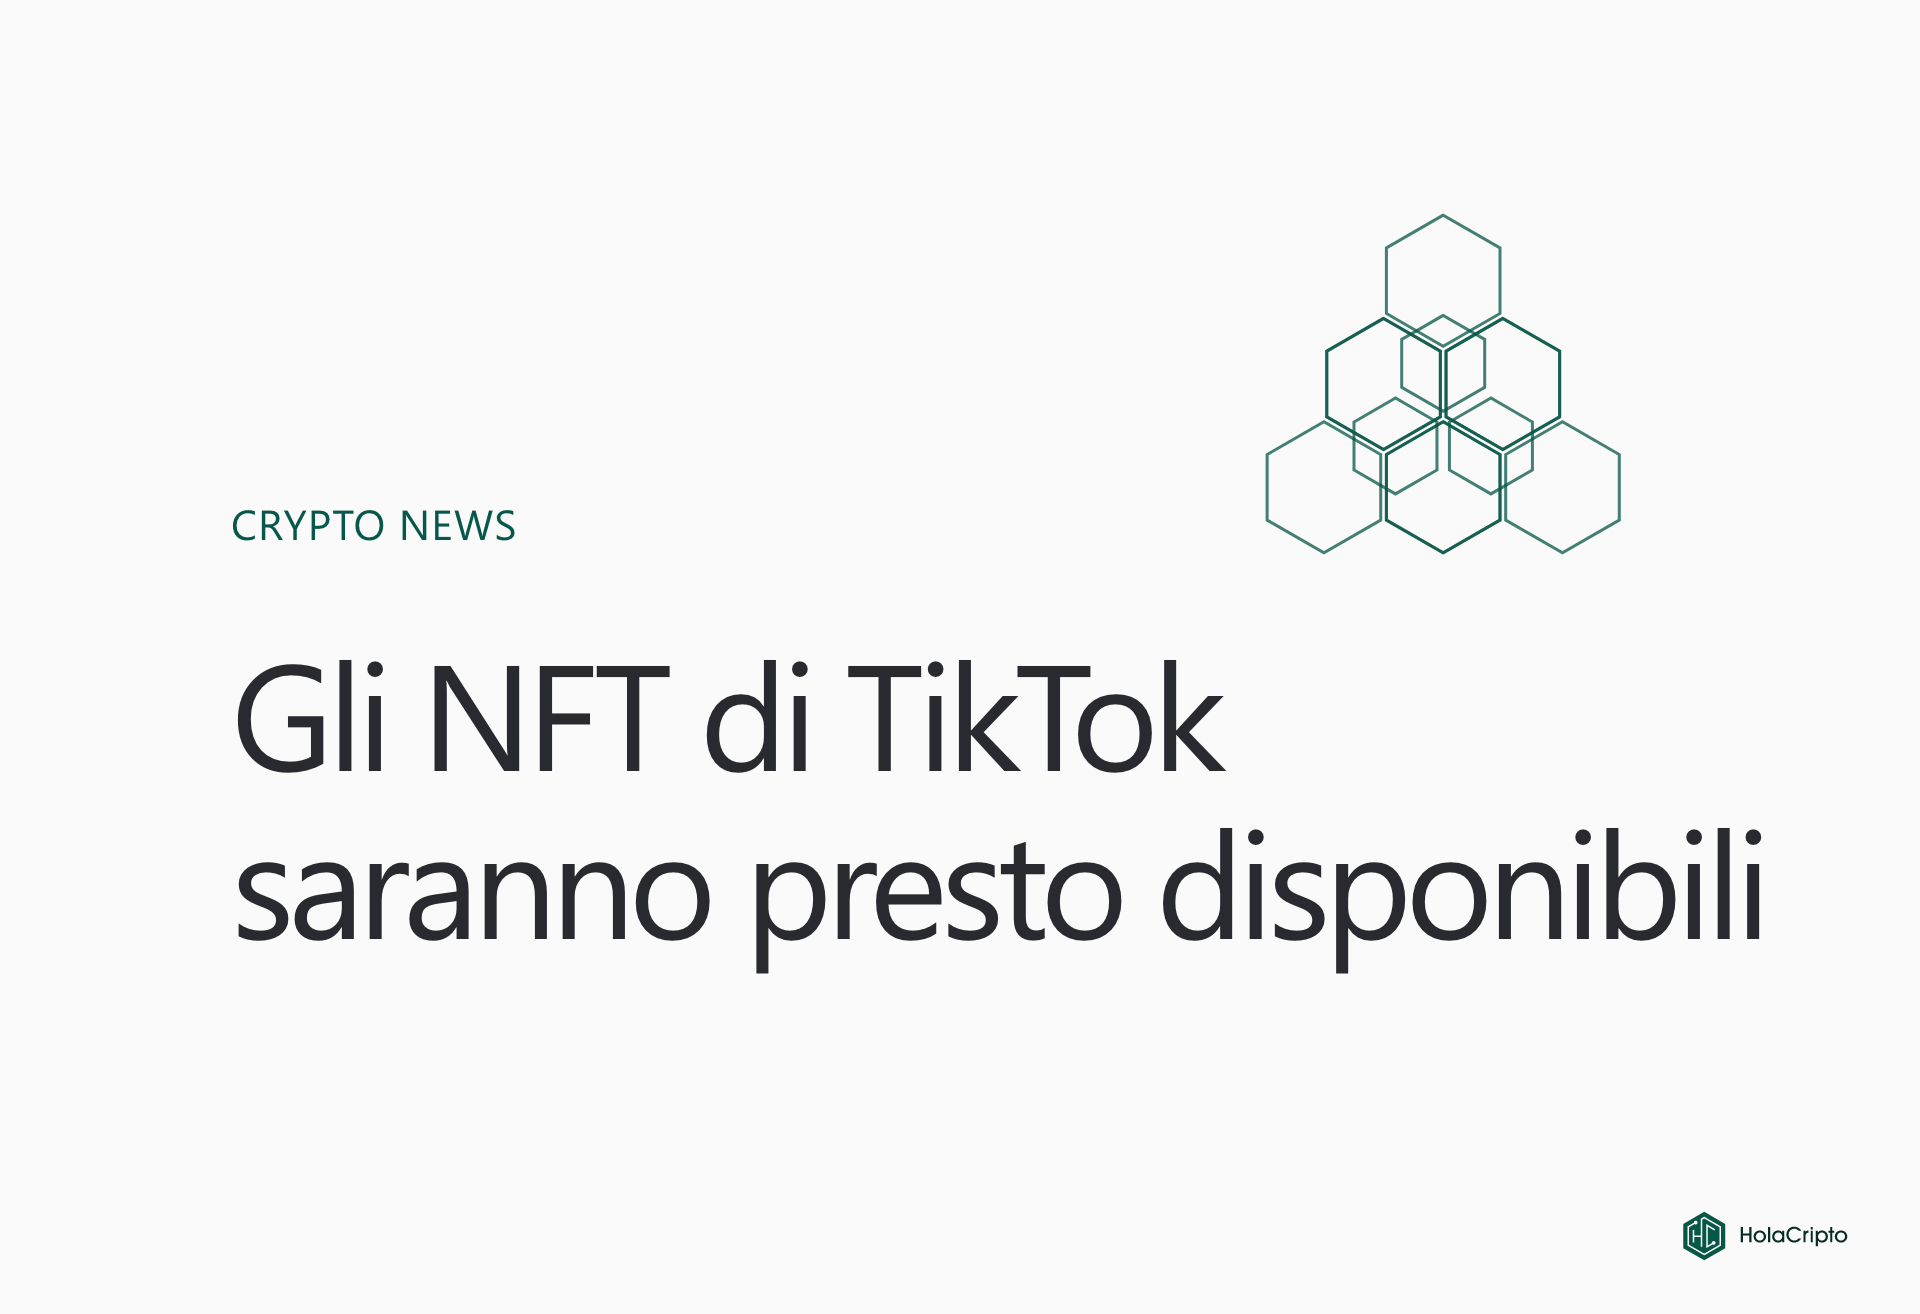 Gli NFT di TikTok saranno presto disponibili